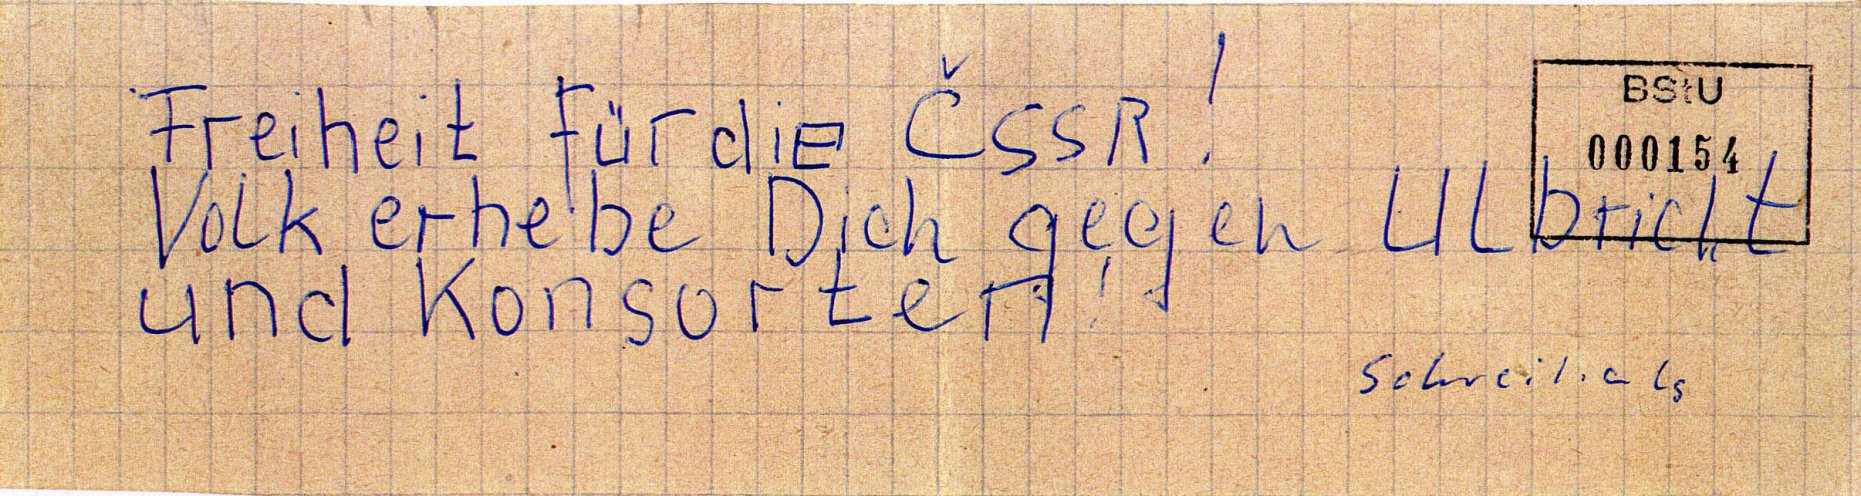 In Schwerin schreibt ein 21-jähriger Flugblätter gegen den Einmarsch der Warschauer-Pakt-Truppen in die CSSR und verteilt diese in Hausbriefkästen in seiner Wohngegend. Quelle: BStU, MfS, BV Schwerin, AU 11/69, GA Bd. 3, Bl. 154, Seite 8 von 10